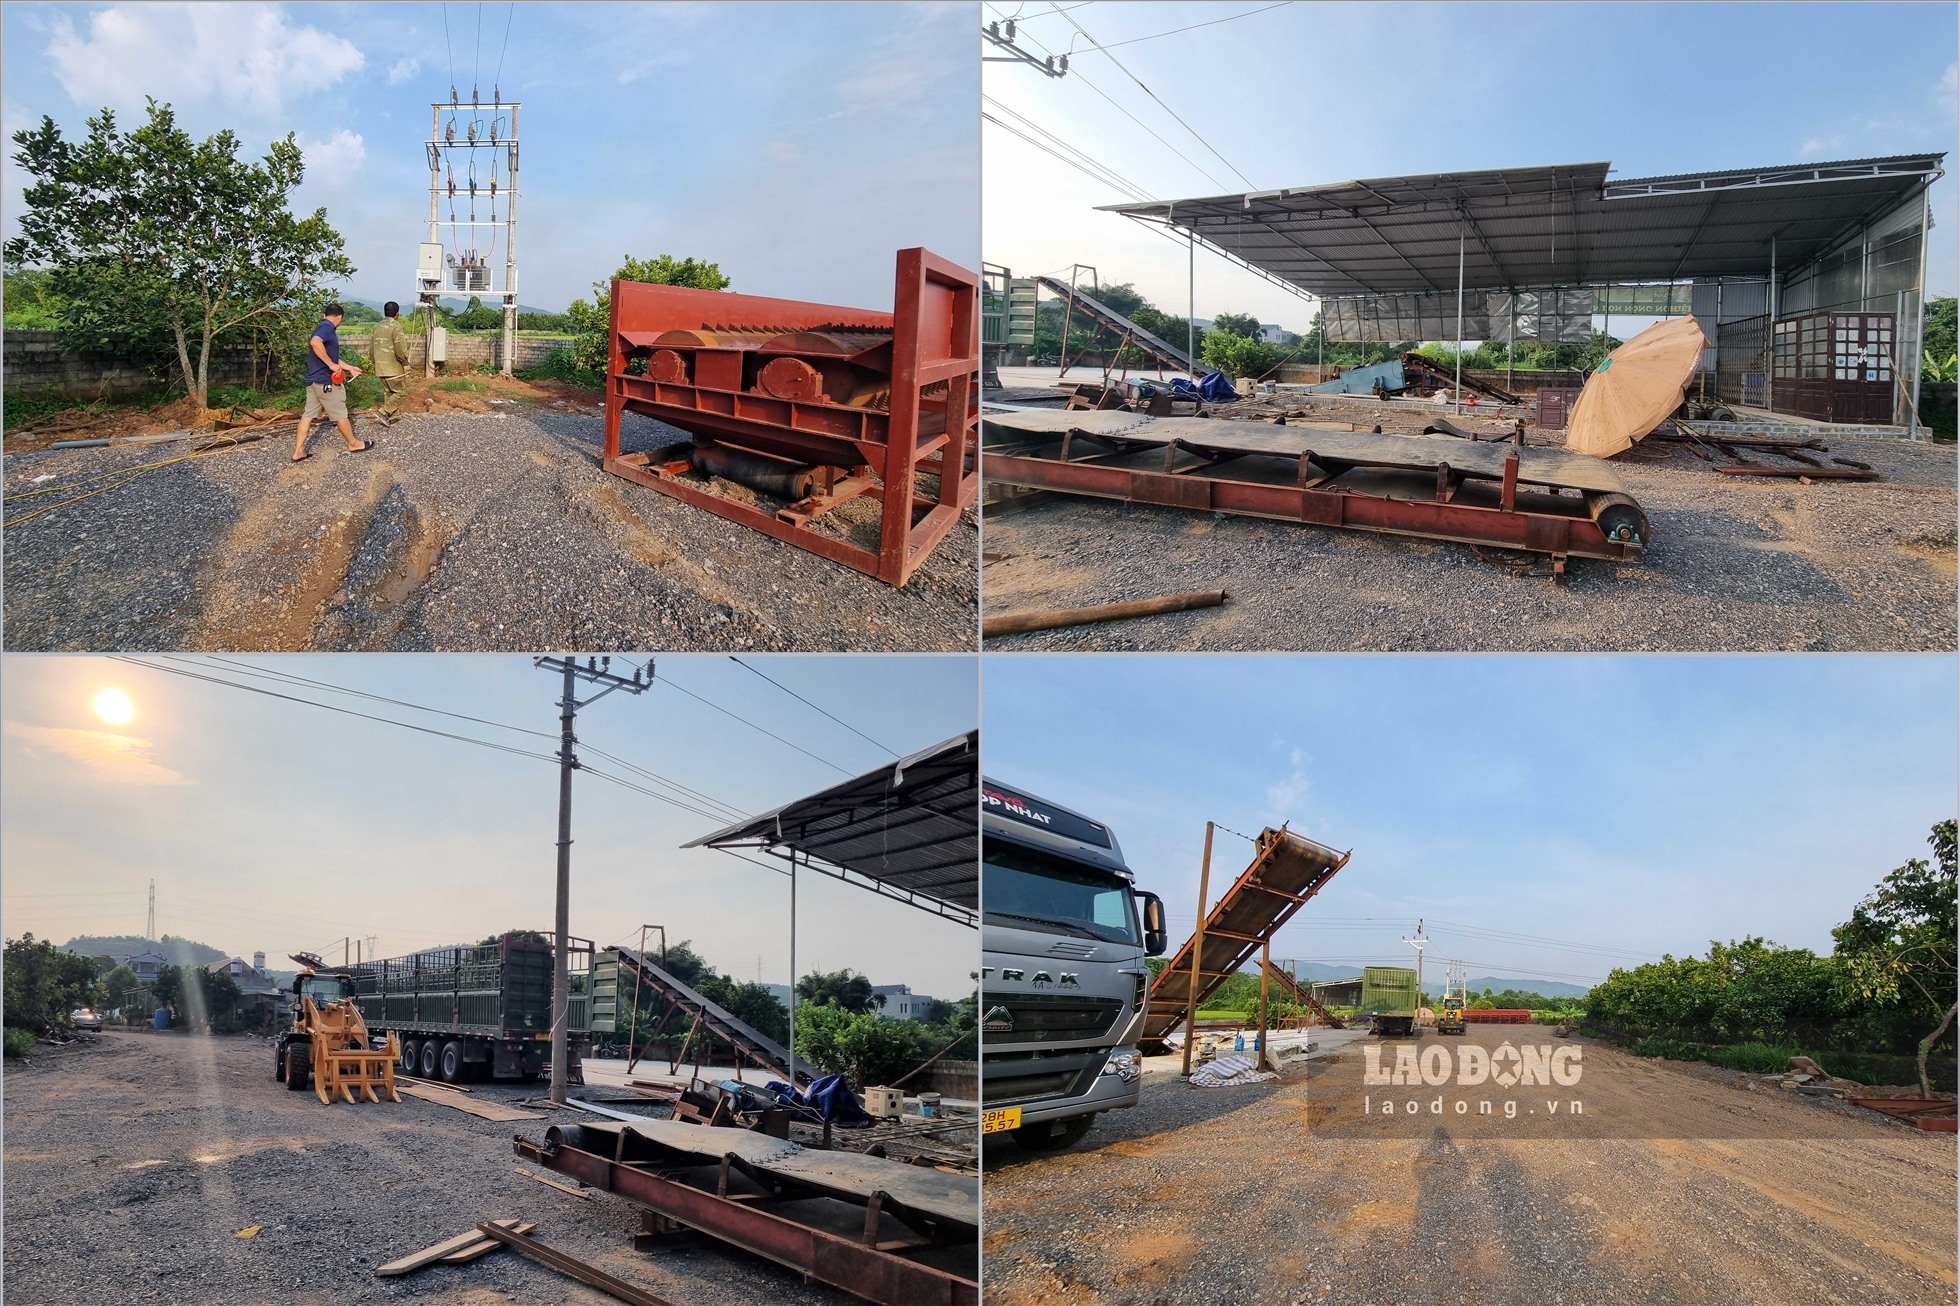 UBND huyện Tân Lạc giao UBND các xã, thị trấn yêu cầu các cơ sở chế biến gỗ keo dừng mọi hoạt động sản xuất trái phép trên địa bàn.